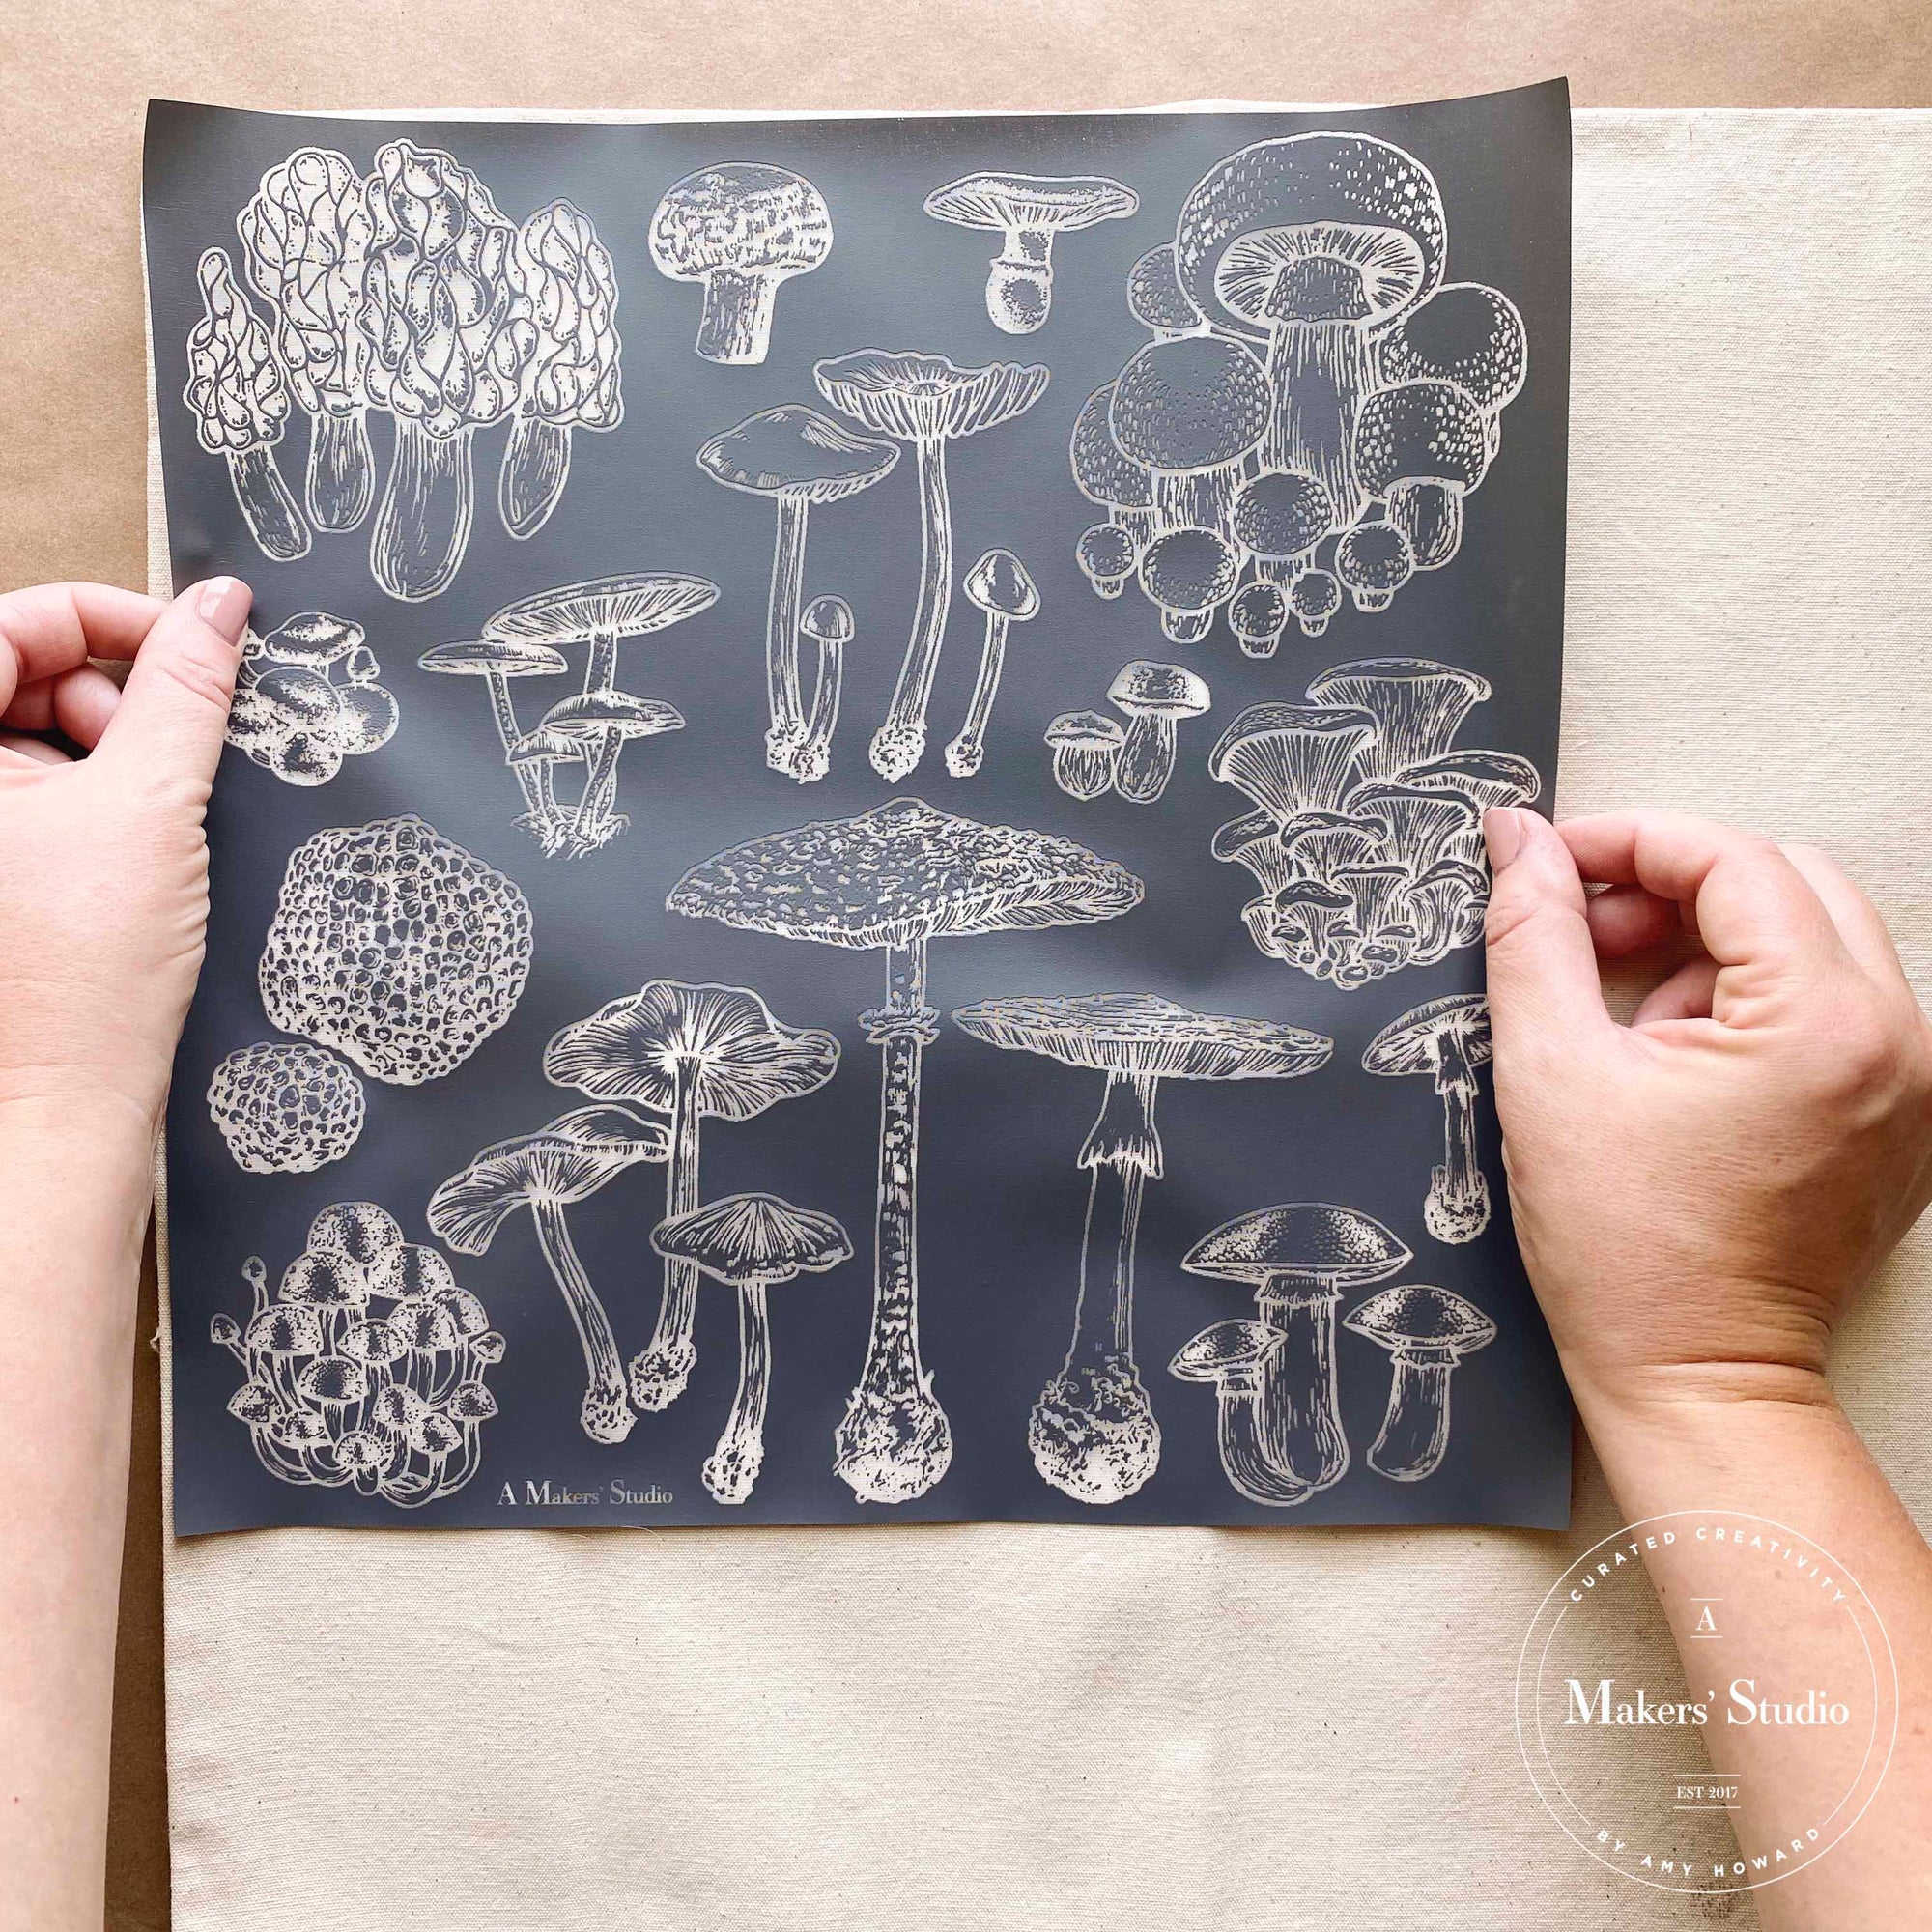 Fungi - Mesh Stencil 12x12